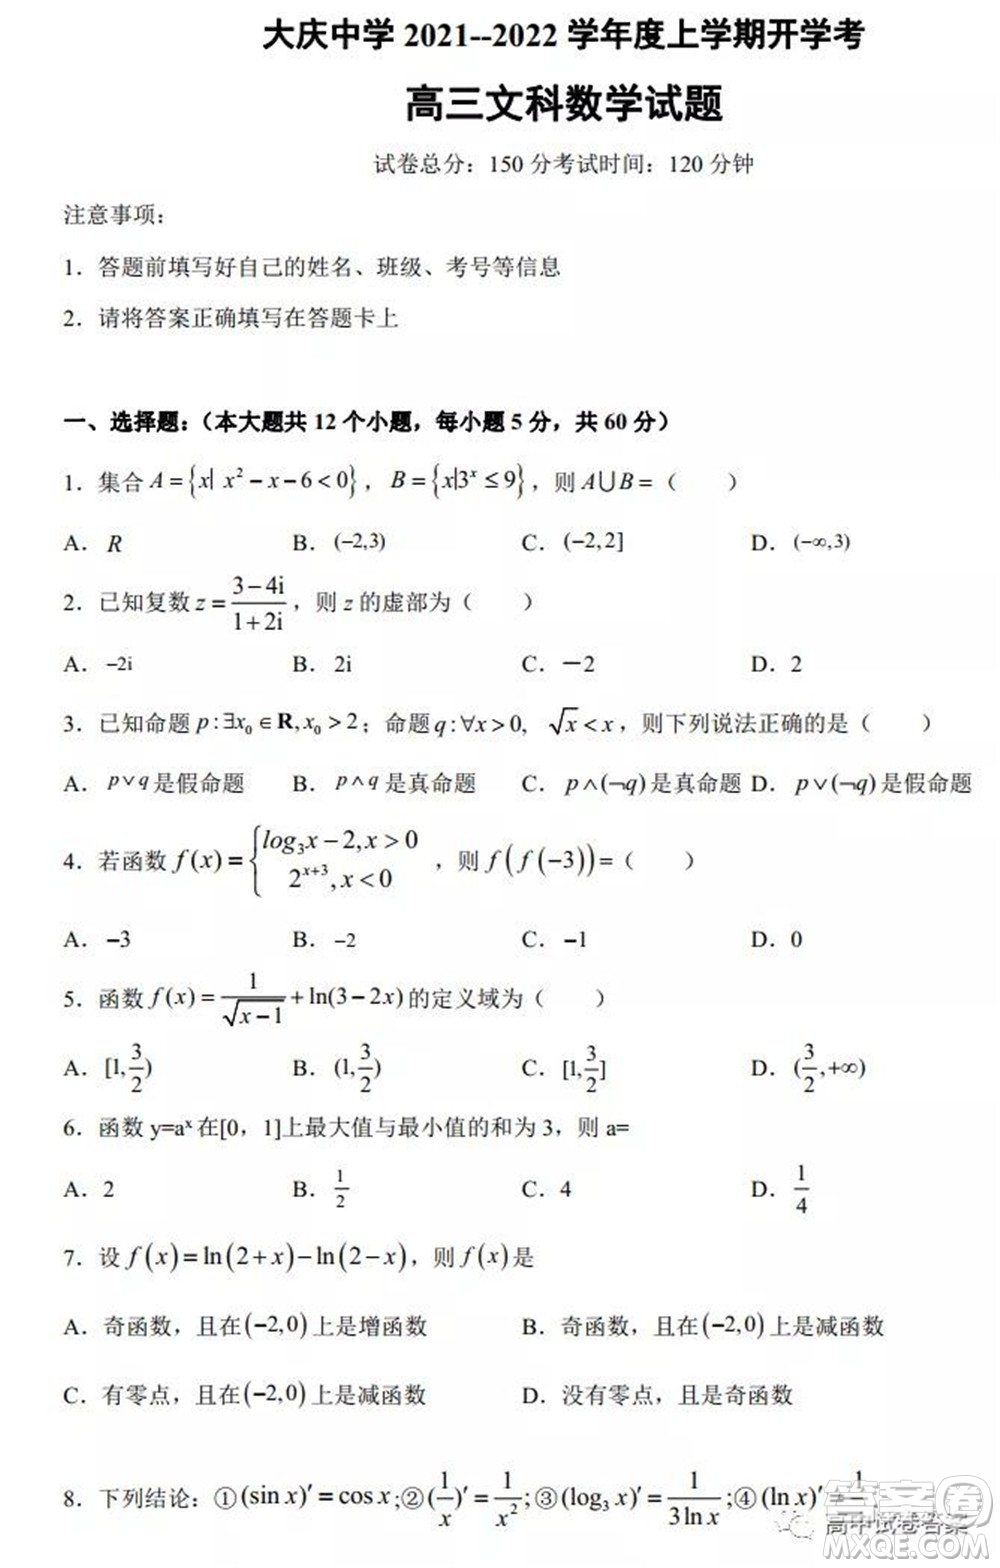 大庆中学2021-2022学年度上学期开学考高三文科数学试卷及答案